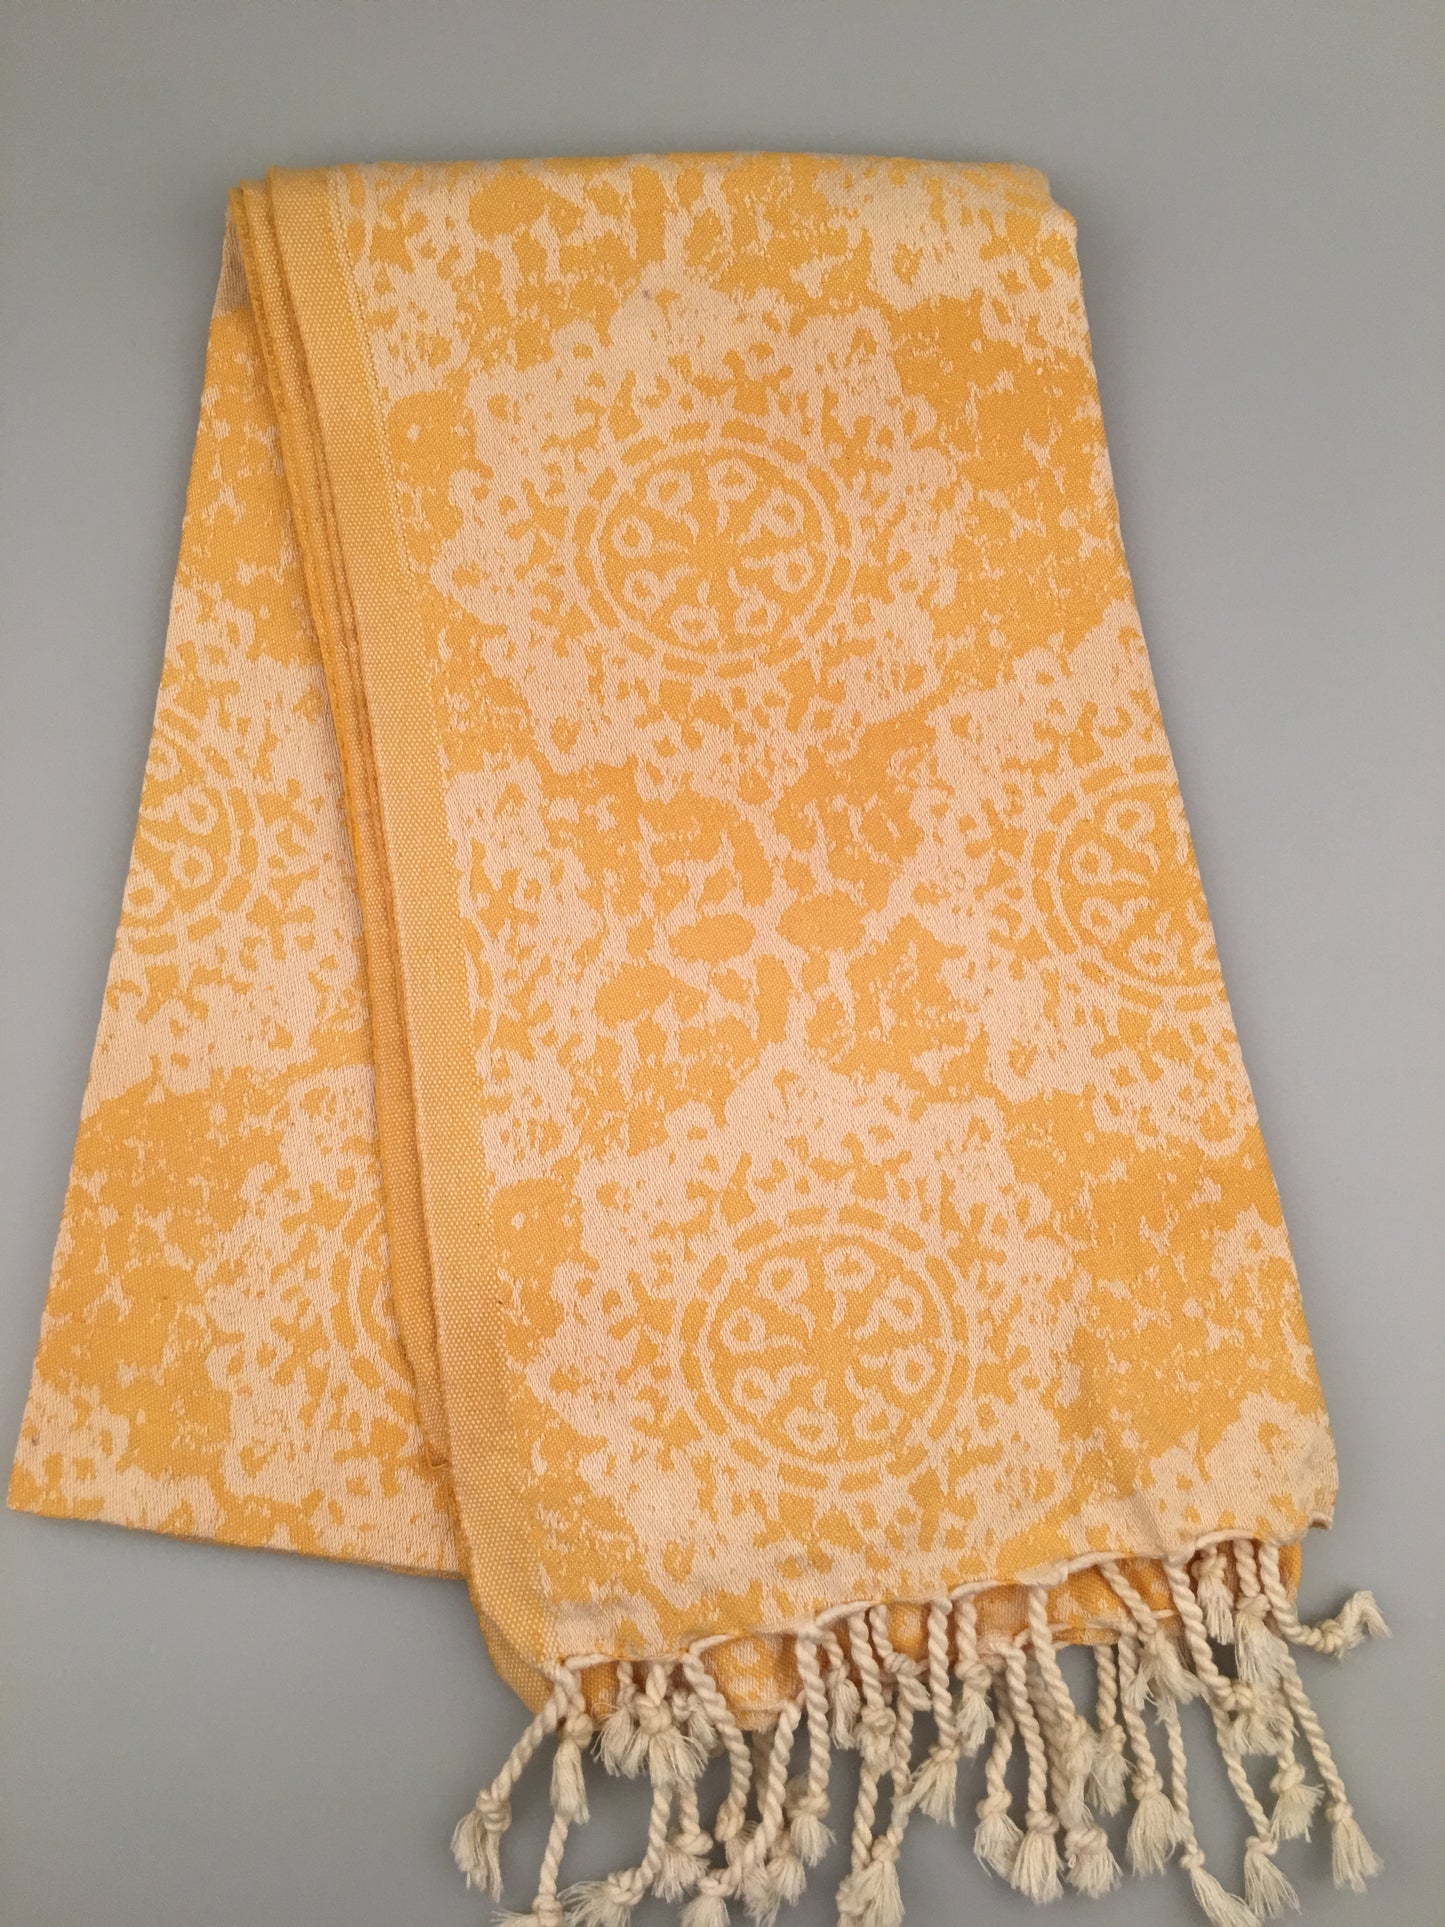 200pcs/LOT Andriake Turkish Towel Jacquard Peshtemal (300g / 400g) - Wholesale Price